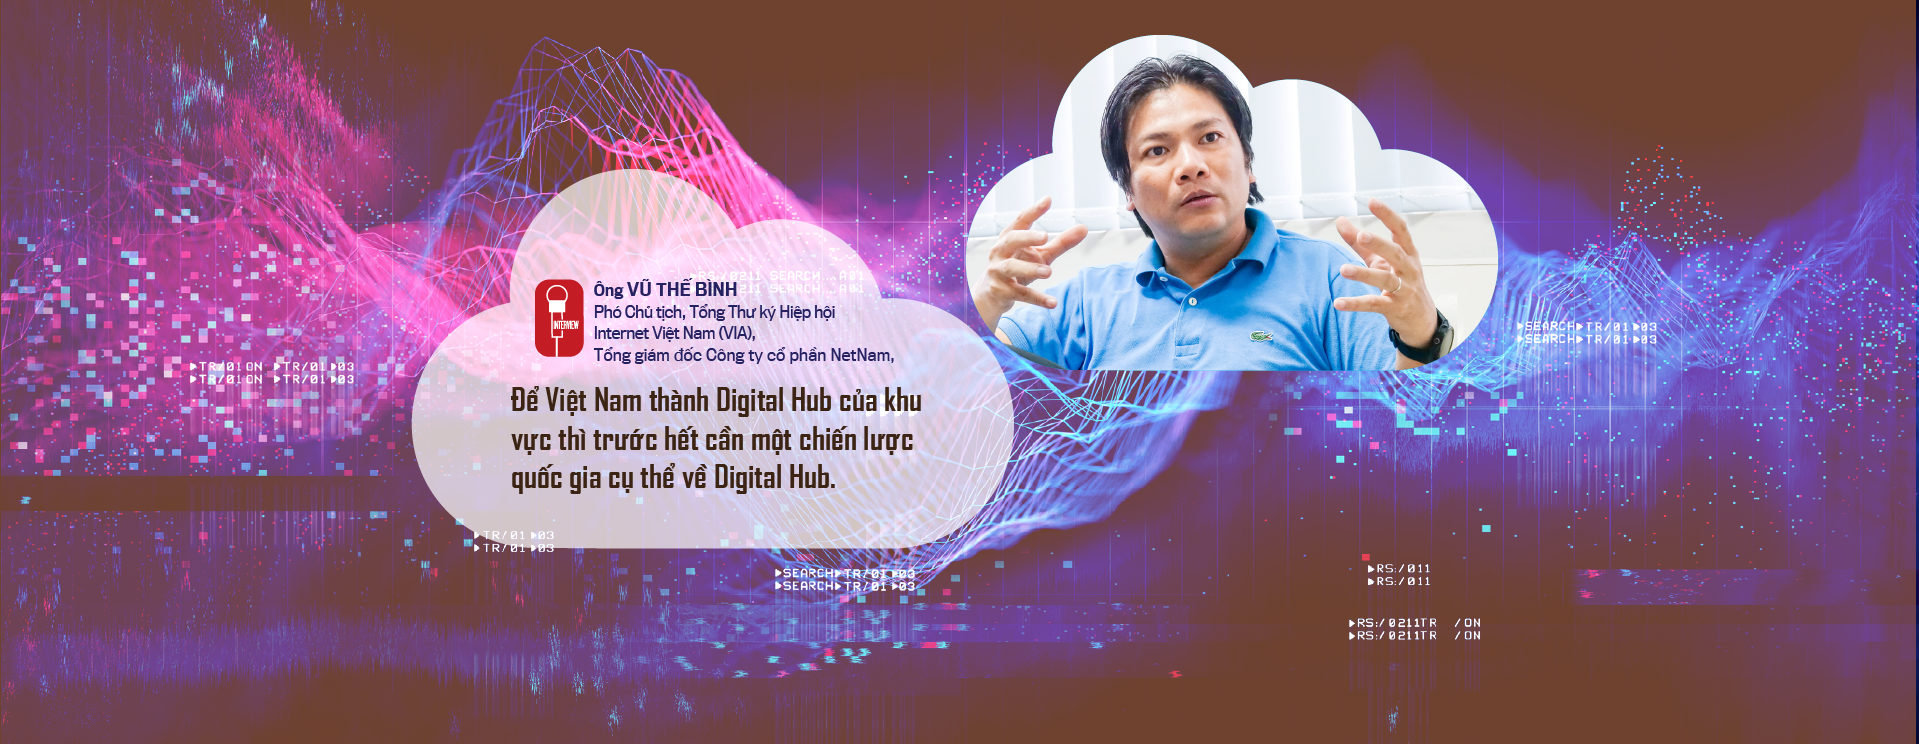 Đưa Việt Nam thành Digital Hub của khu vực: Cần một chiến lược quốc gia   - Ảnh 6